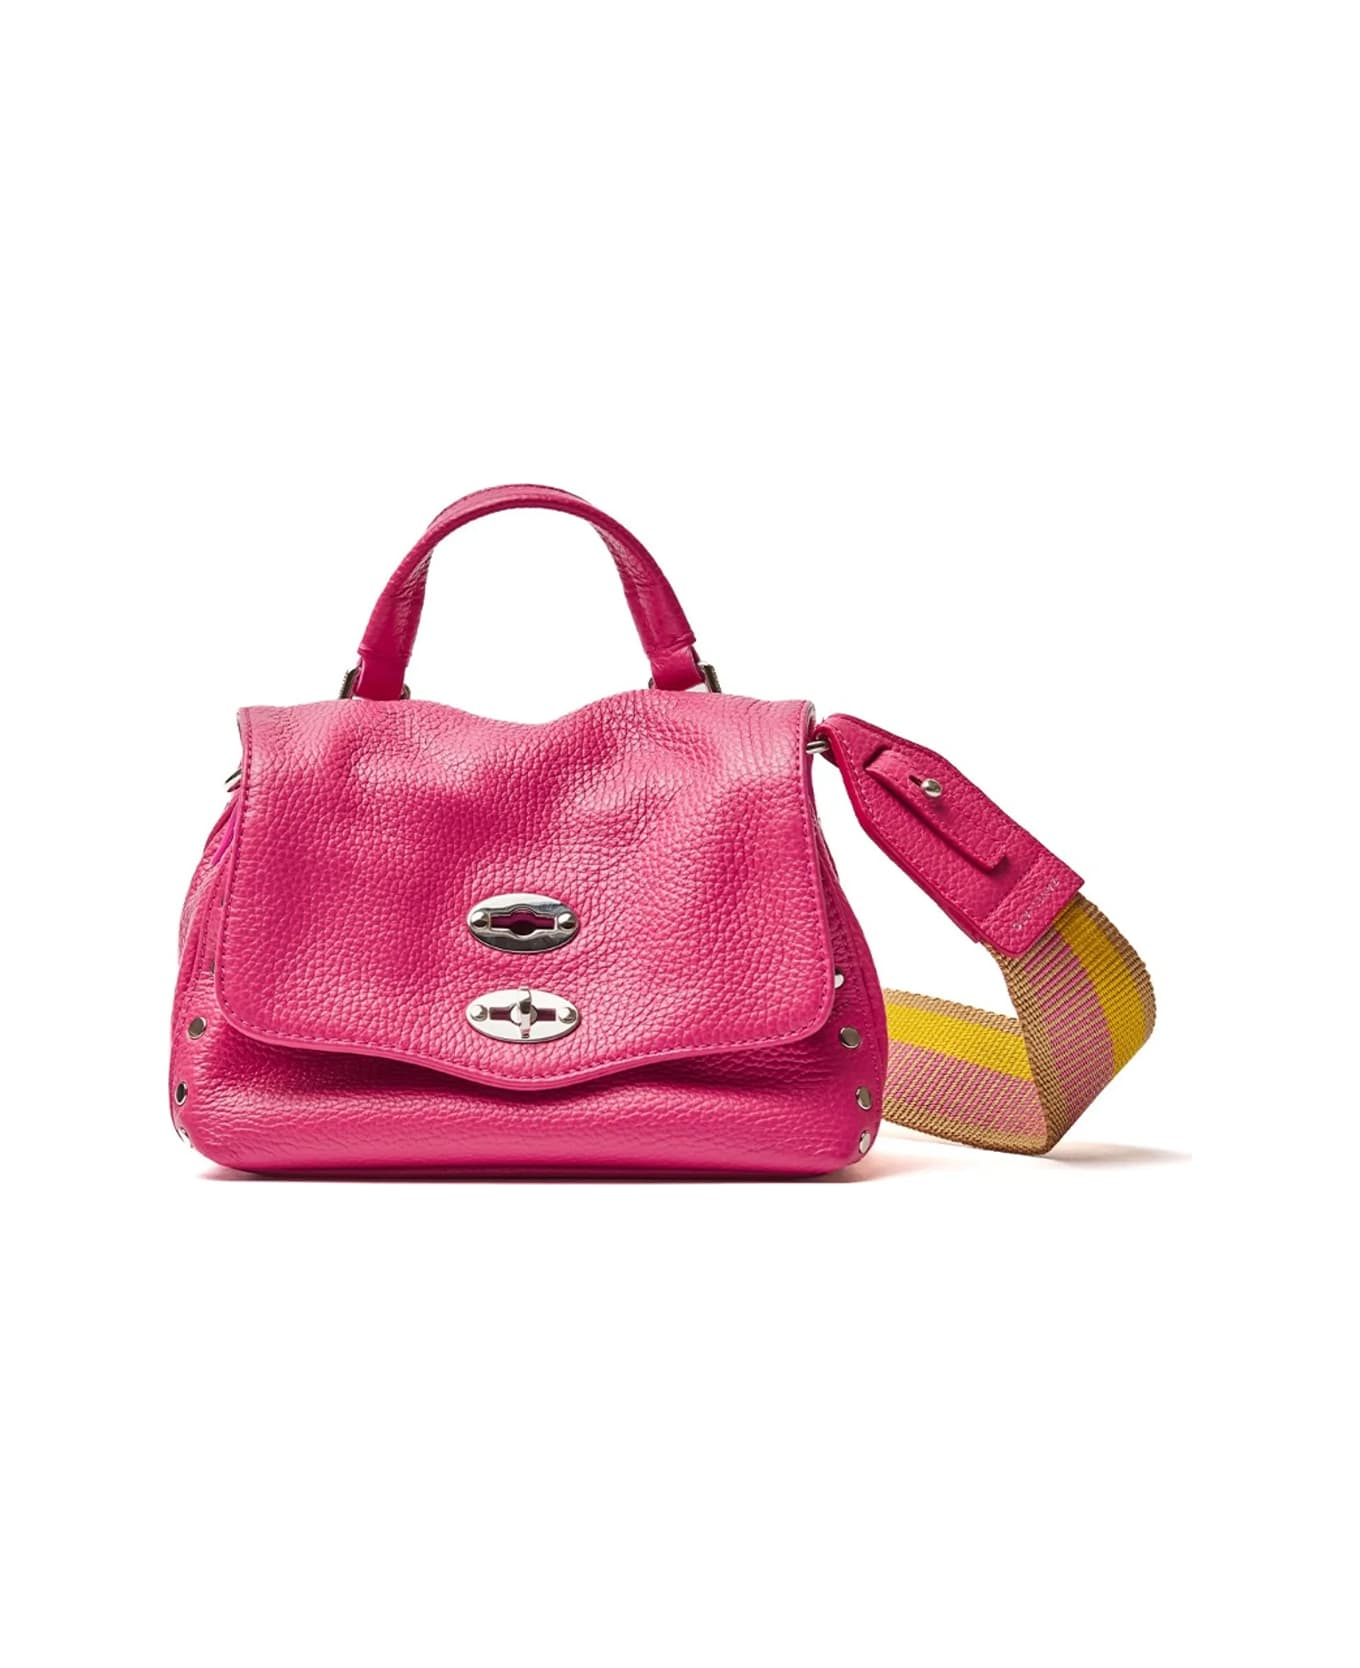 Zanellato Postina Daily Giorno Bag In Fuchsia With Shoulder Strap - ROSE TRIESTE